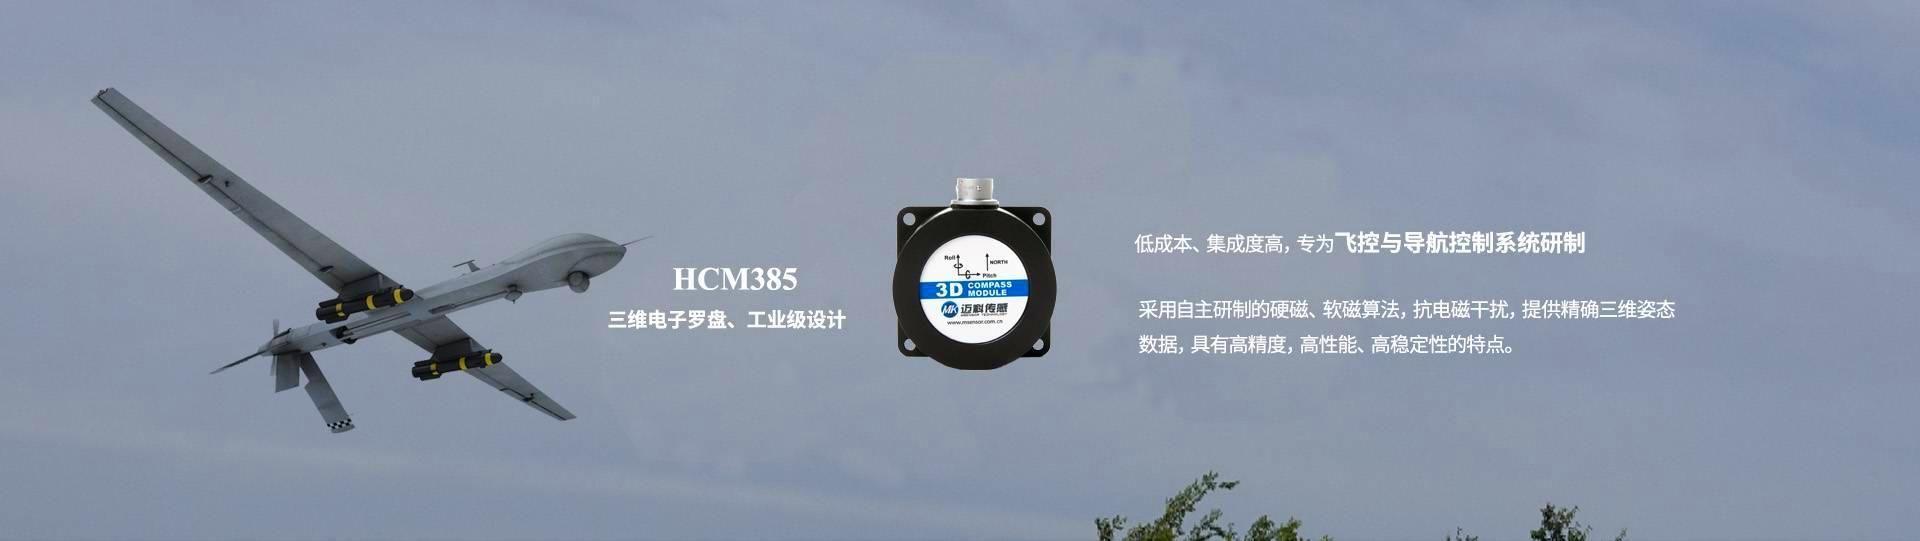 HCM385三维电子罗盘飞控与导航控制